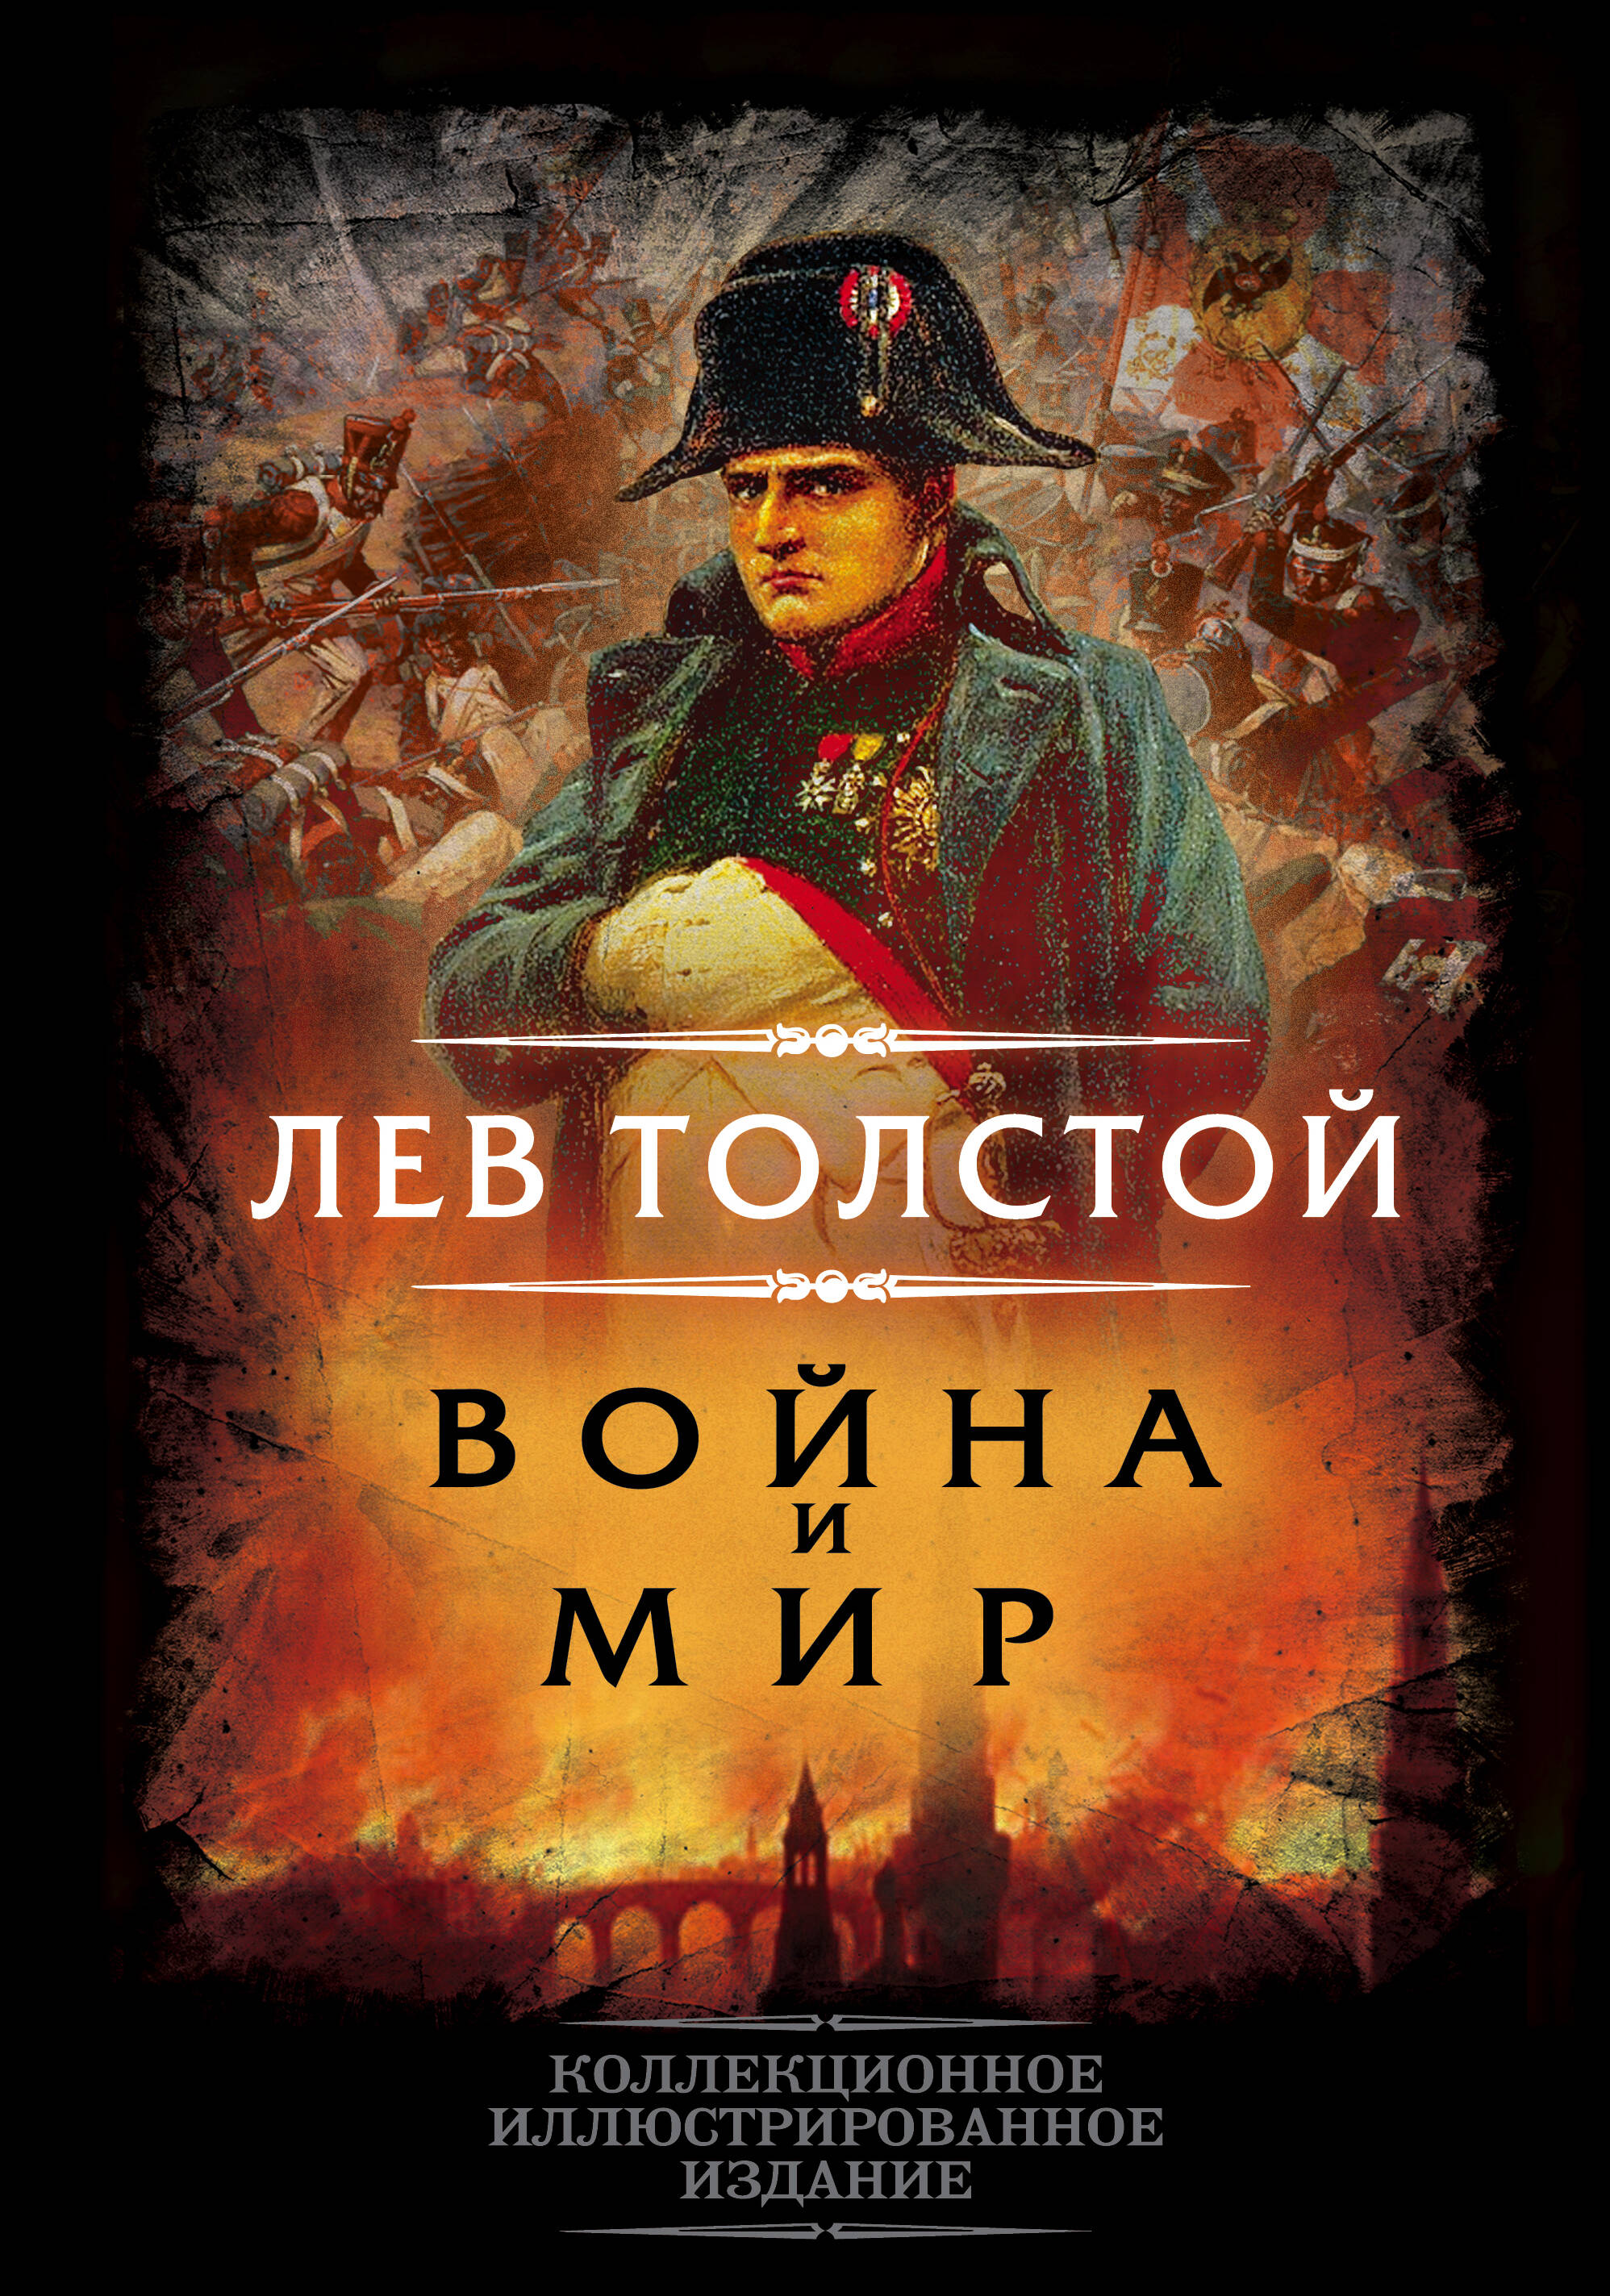 Толстой Лев Николаевич - Война и мир